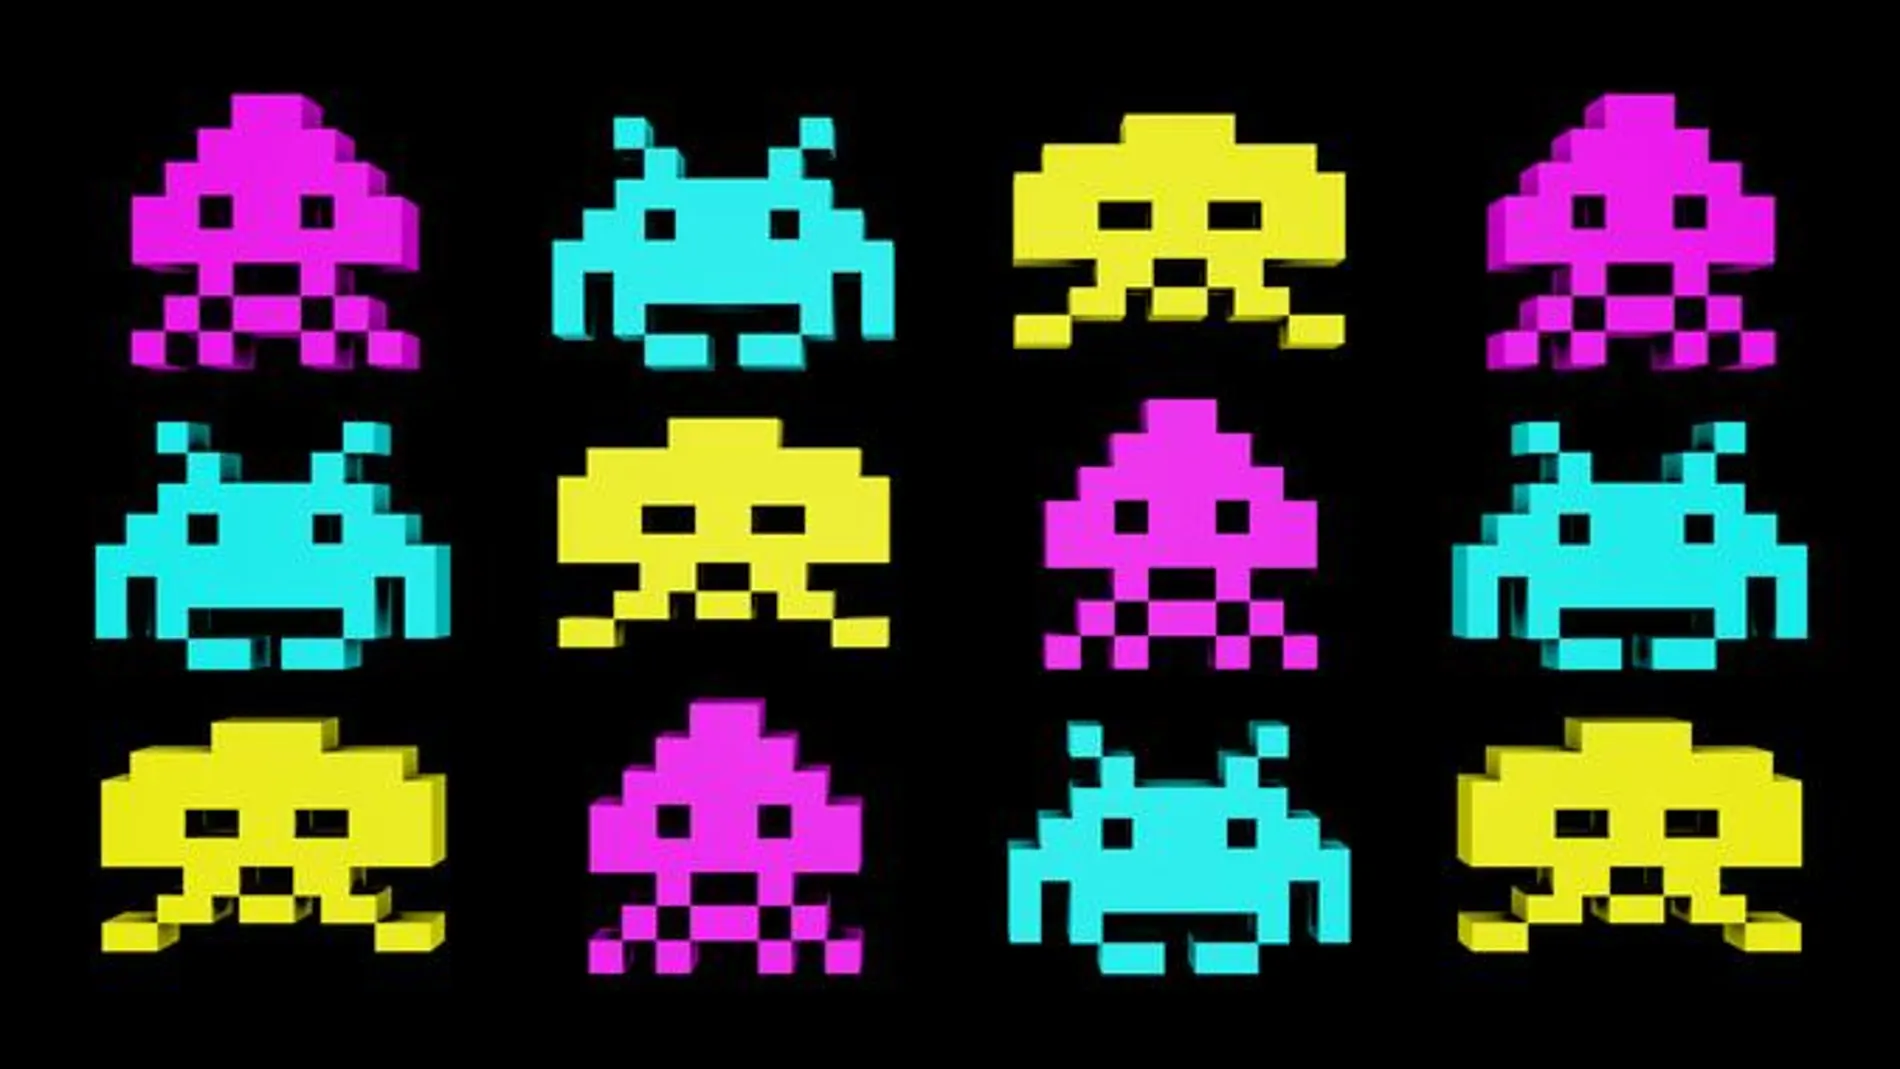 El ordenador superó a personas profesionales en más de la mitad de los videojuegos analizados, como Space Invaders